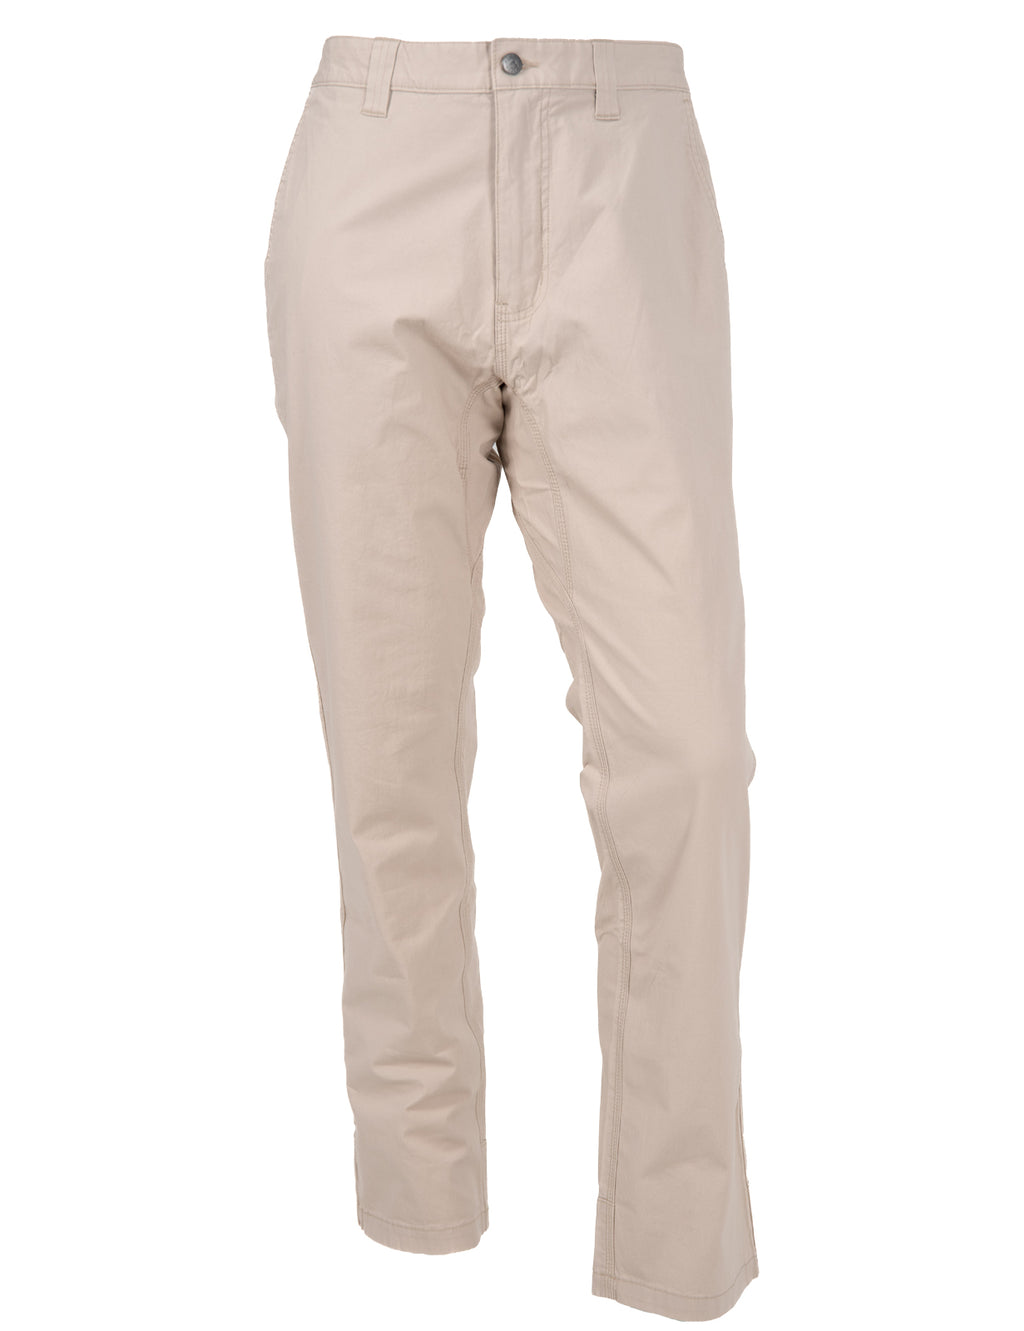 MEC, Pants & Jumpsuits, Mec Hiking Nylon Stretch Capri Pants Size 6